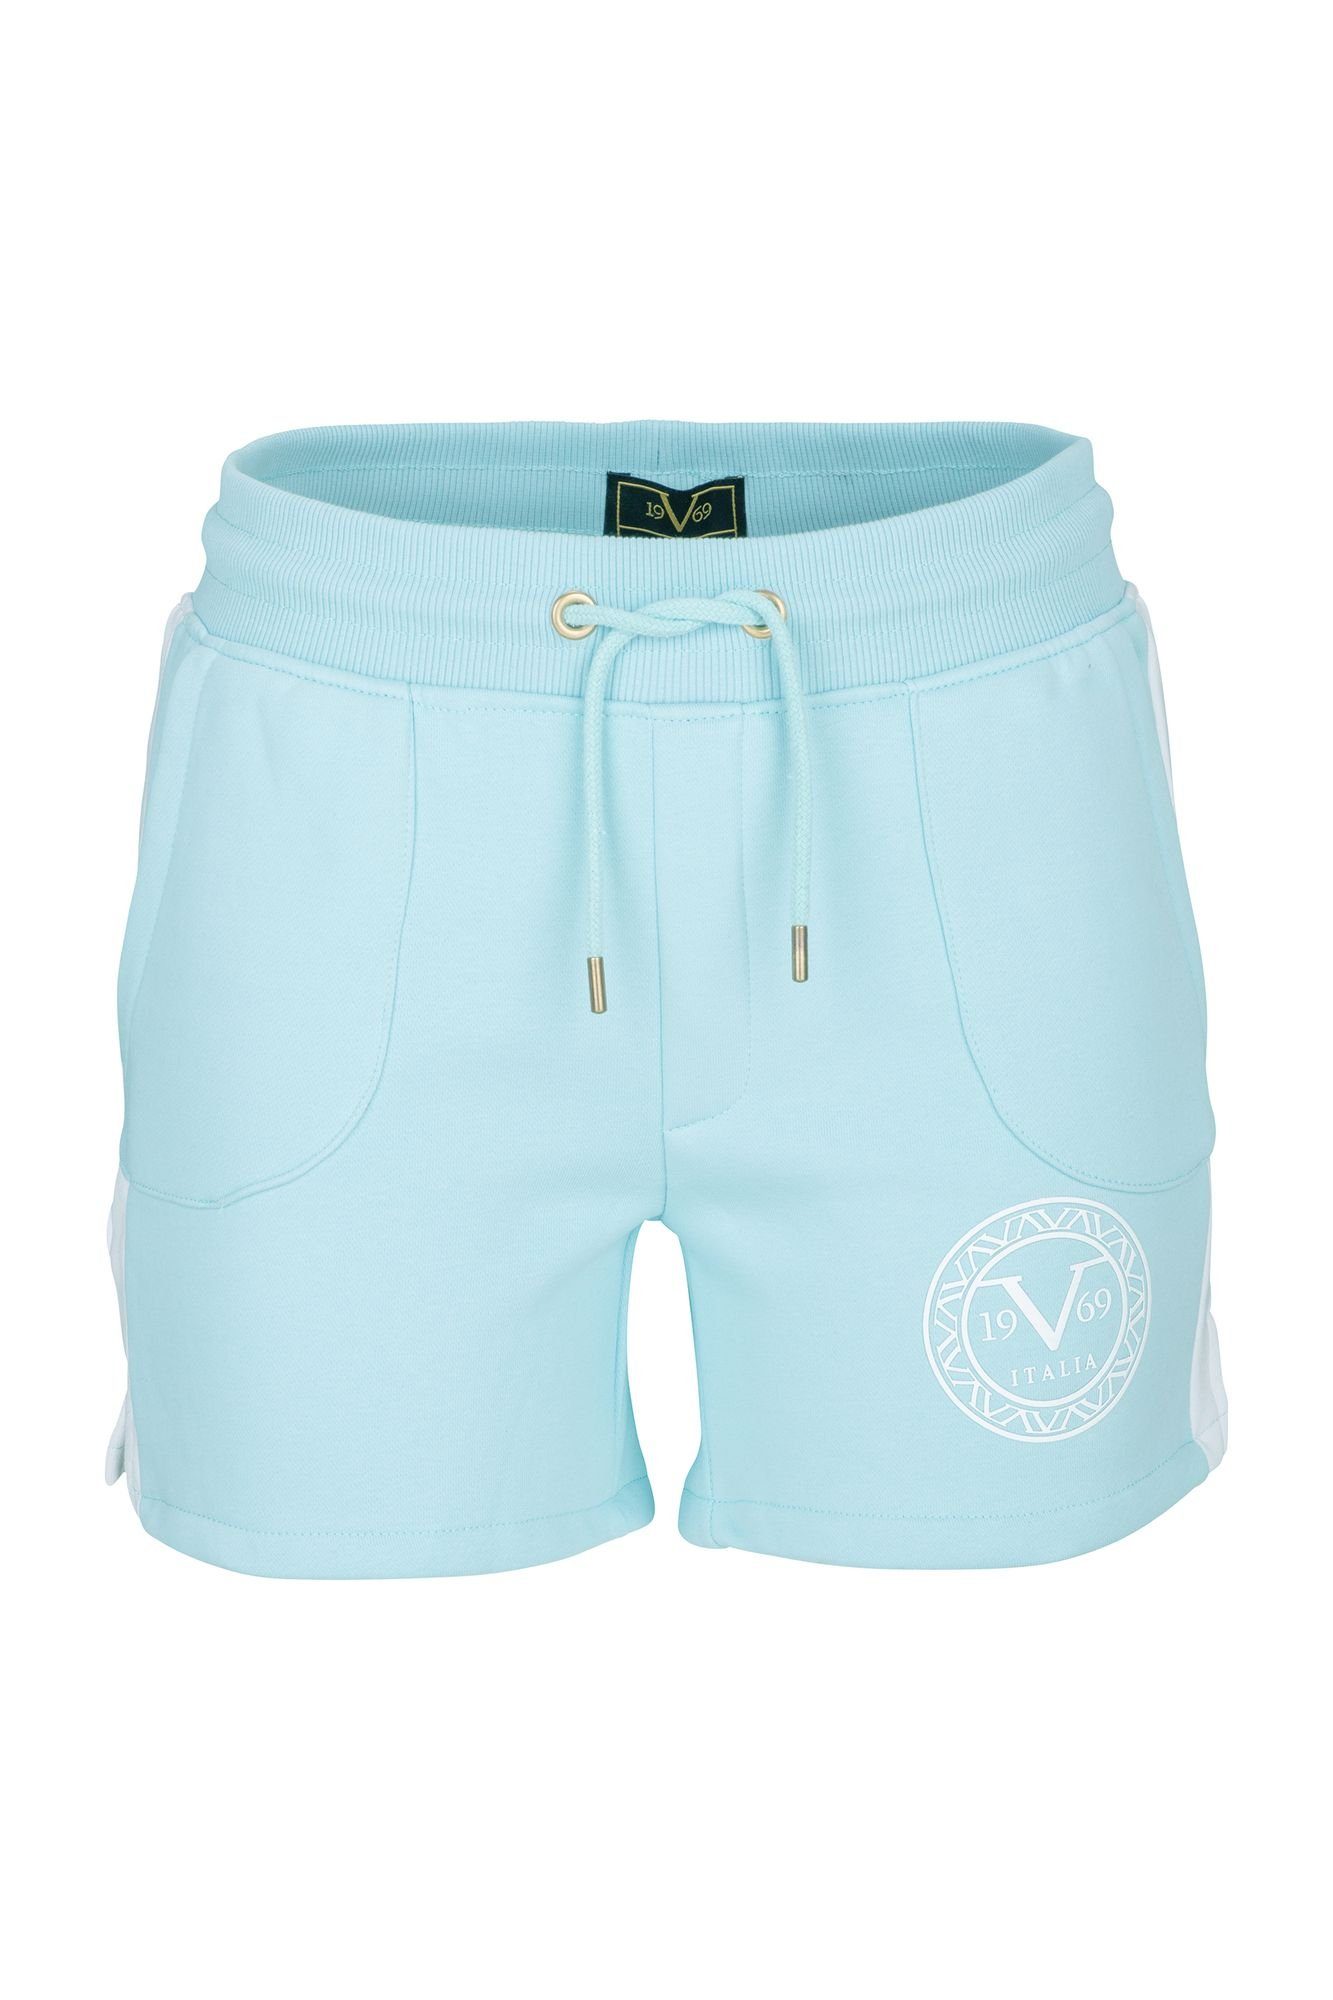 19V69 Italia by Versace Shorts Elsa, Originale Farbbezeichnung: Cool Blue  online kaufen | OTTO